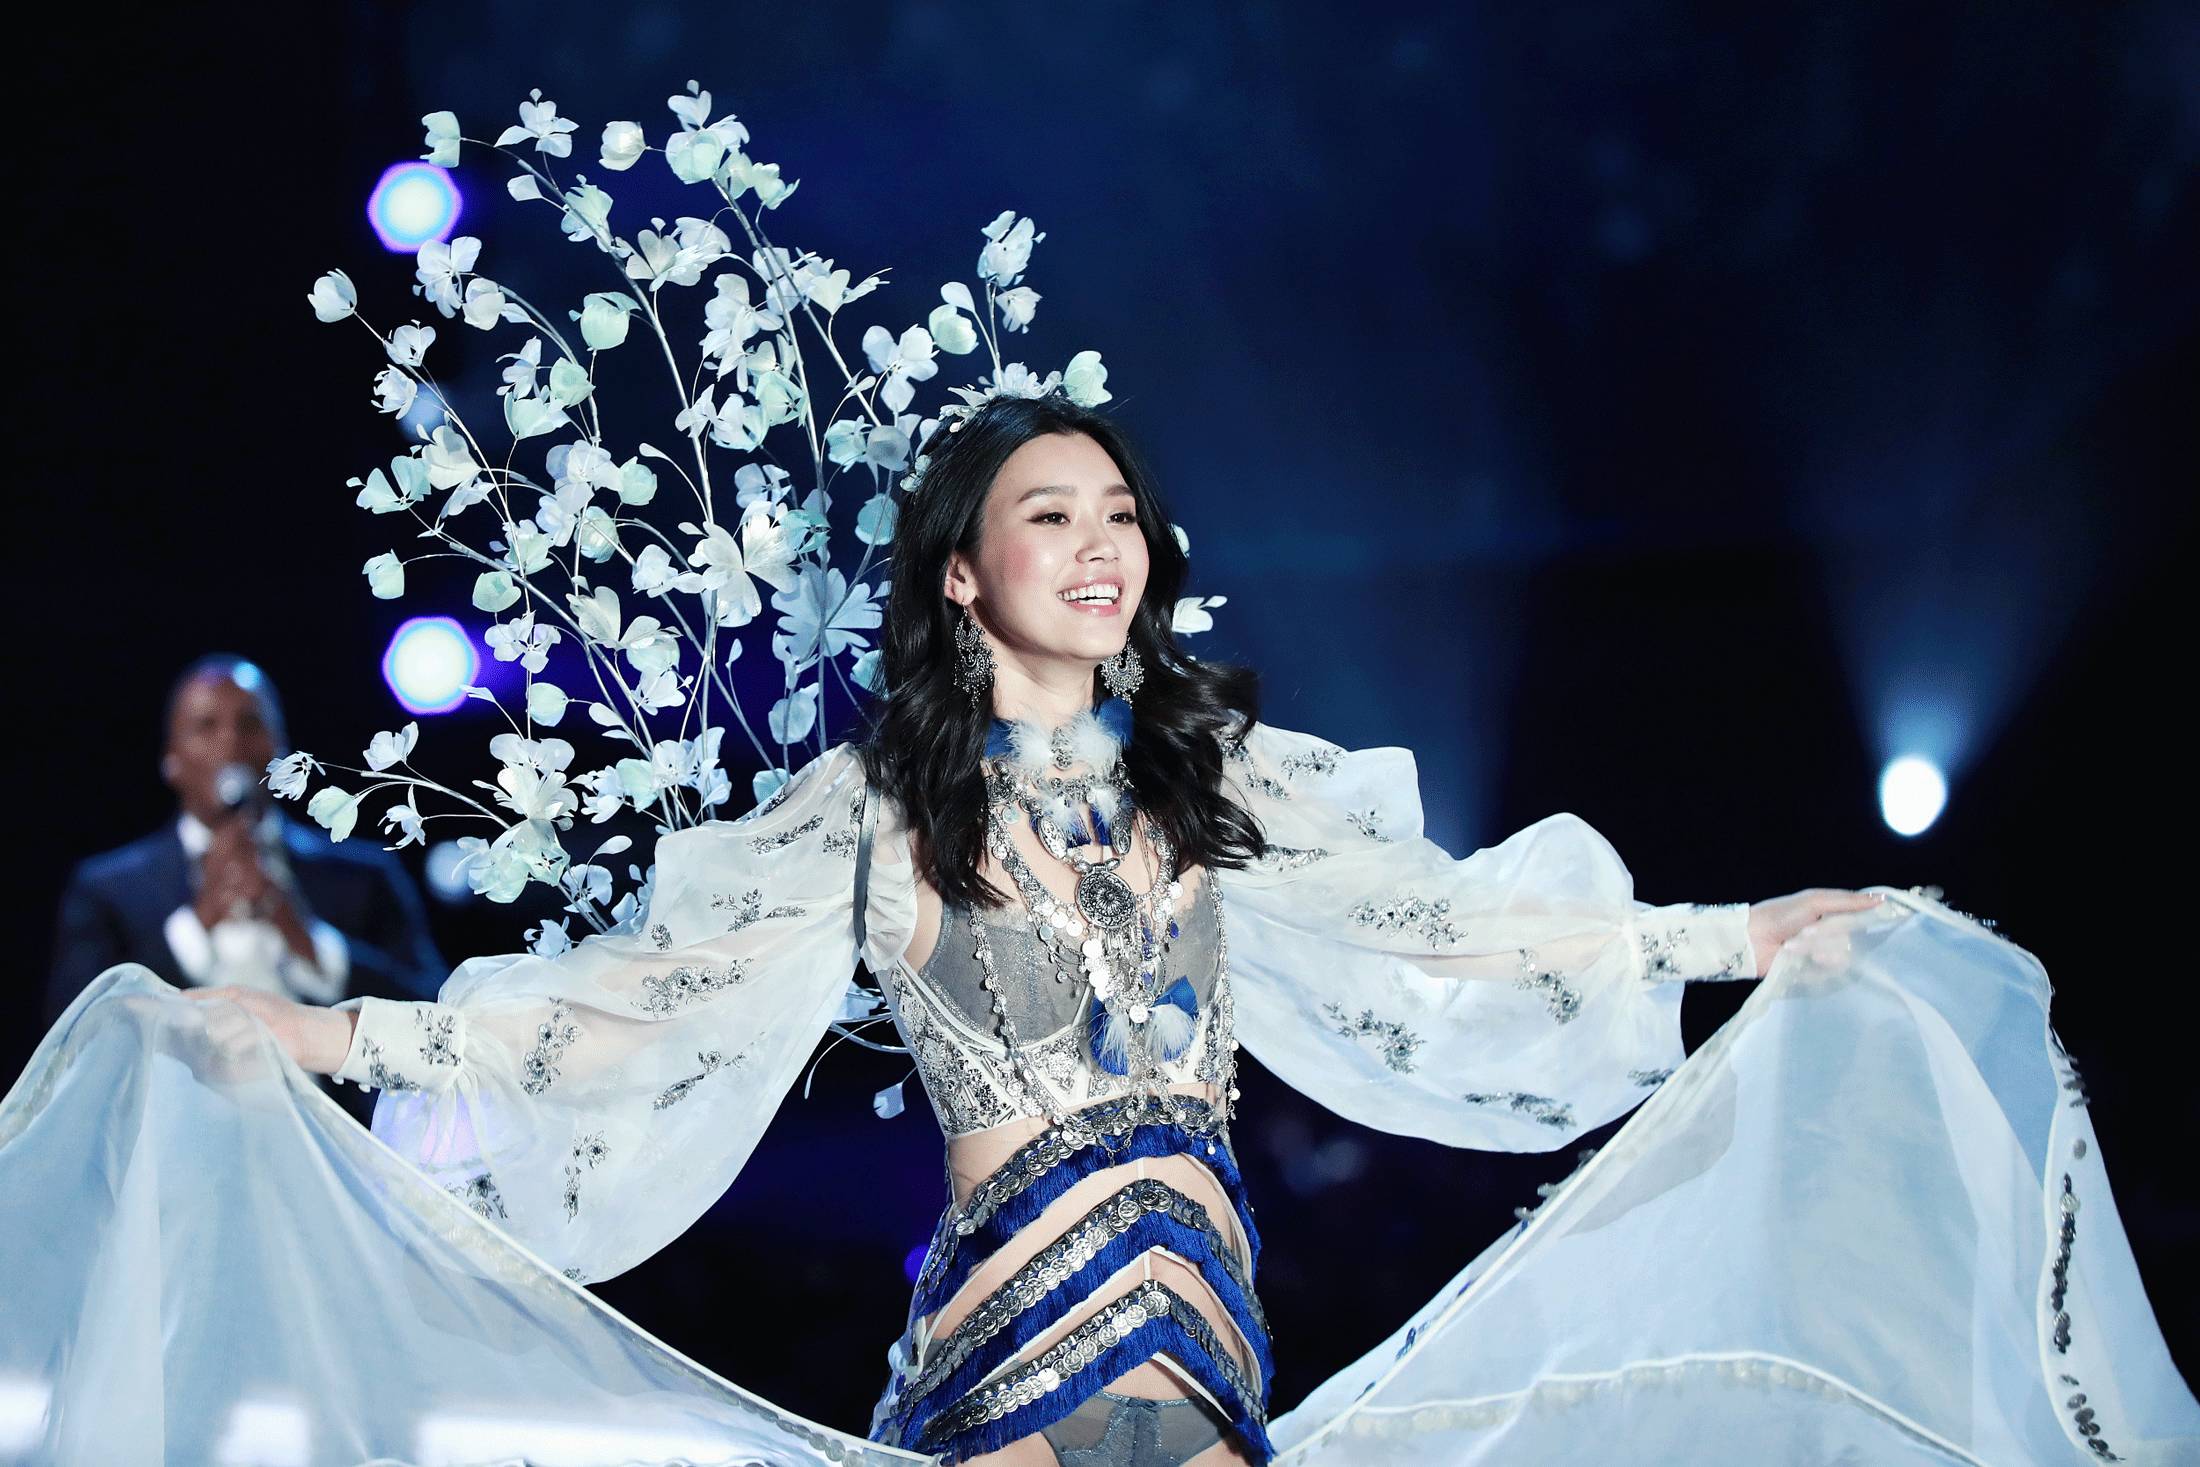 张靓颖是这个环节的表演嘉宾,也是维密史上第一个亚洲表演嘉宾